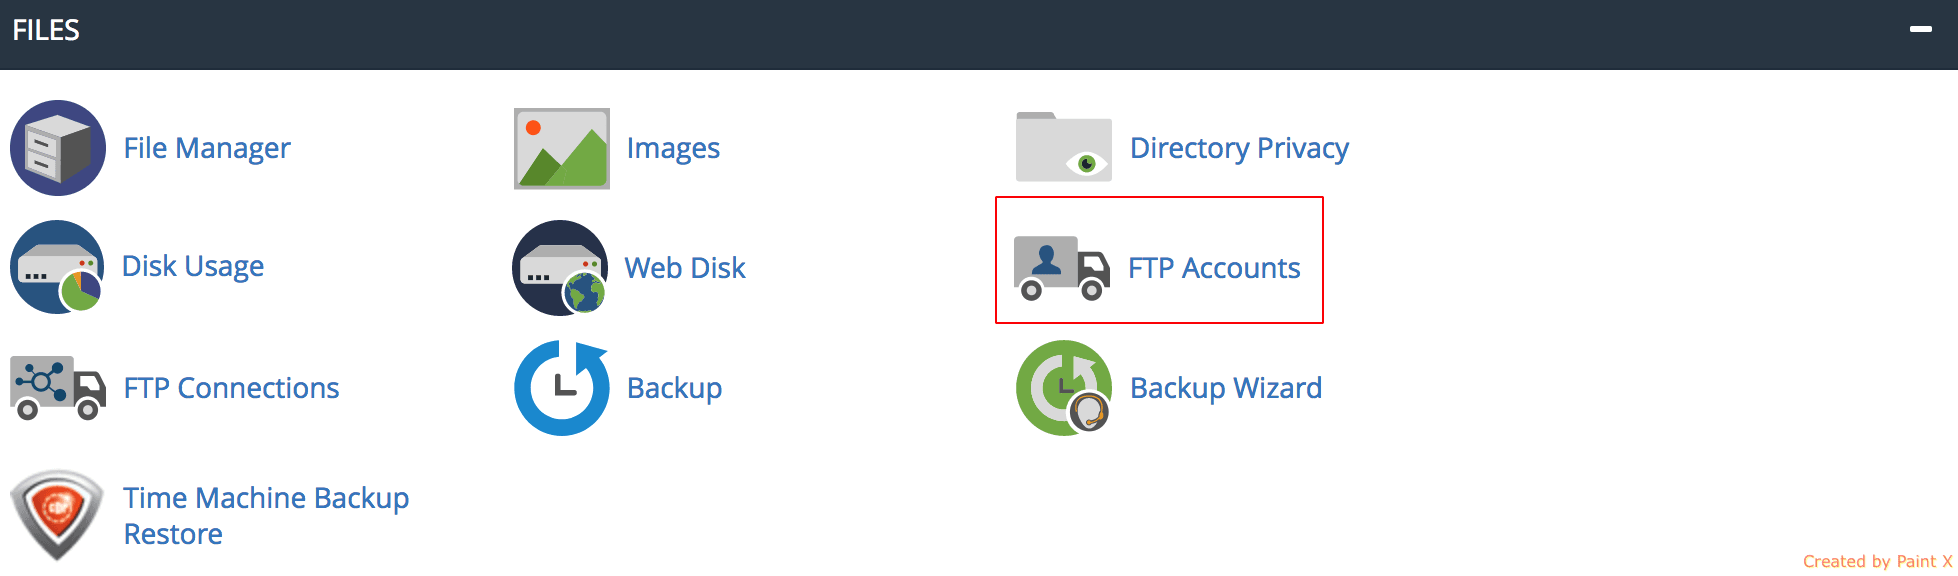 FTP-Accounts